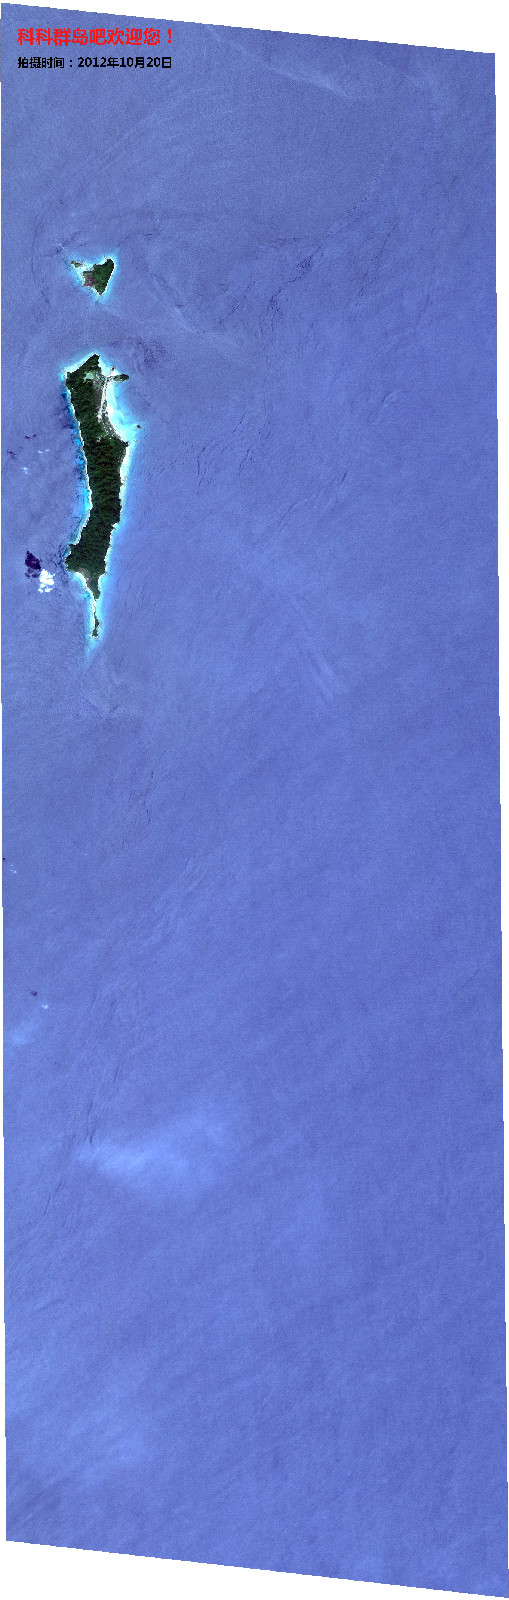 衛星圖拍攝時間：2012年12月20日